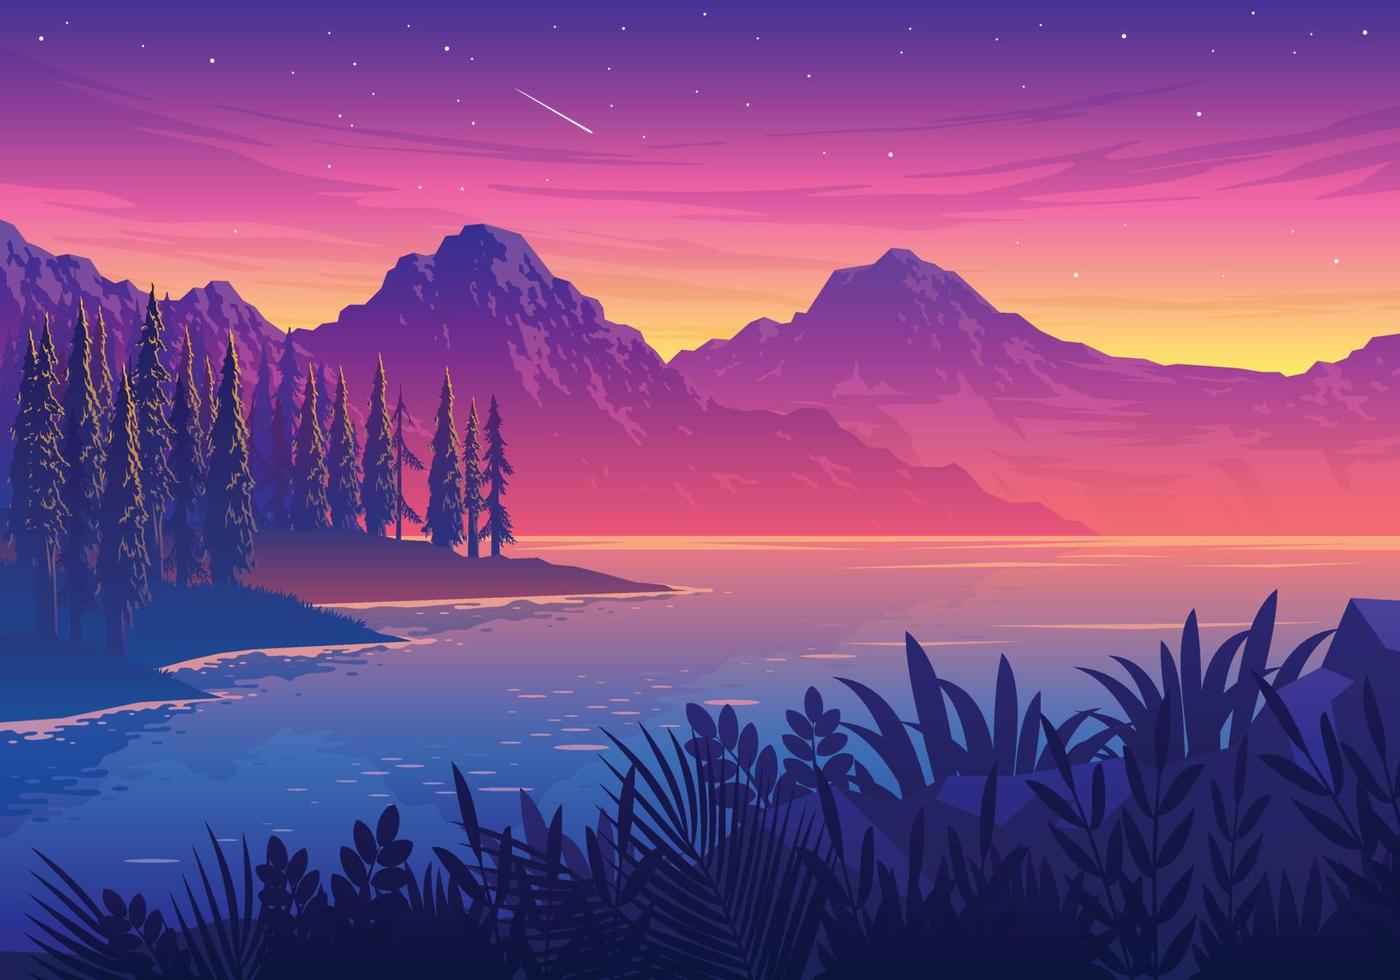 Sunset Lake Landscape Illustration vector